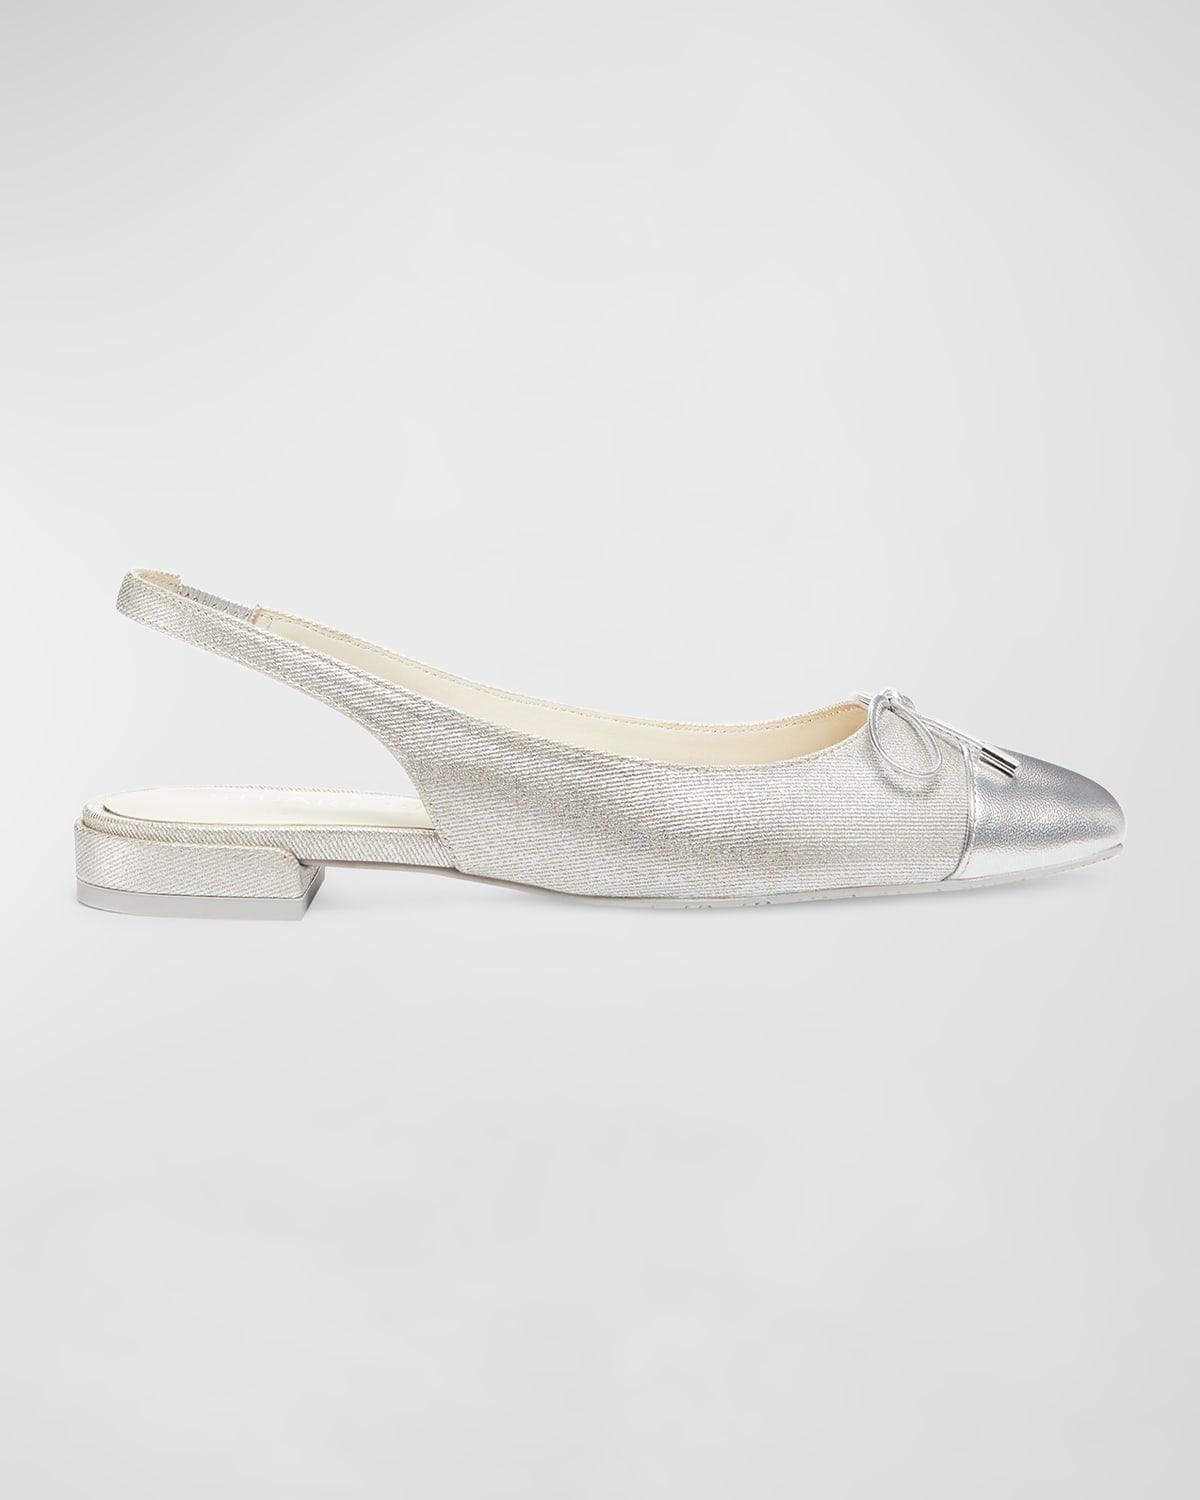 Sleek Metallic Bow Slingback Ballerina Flats Product Image